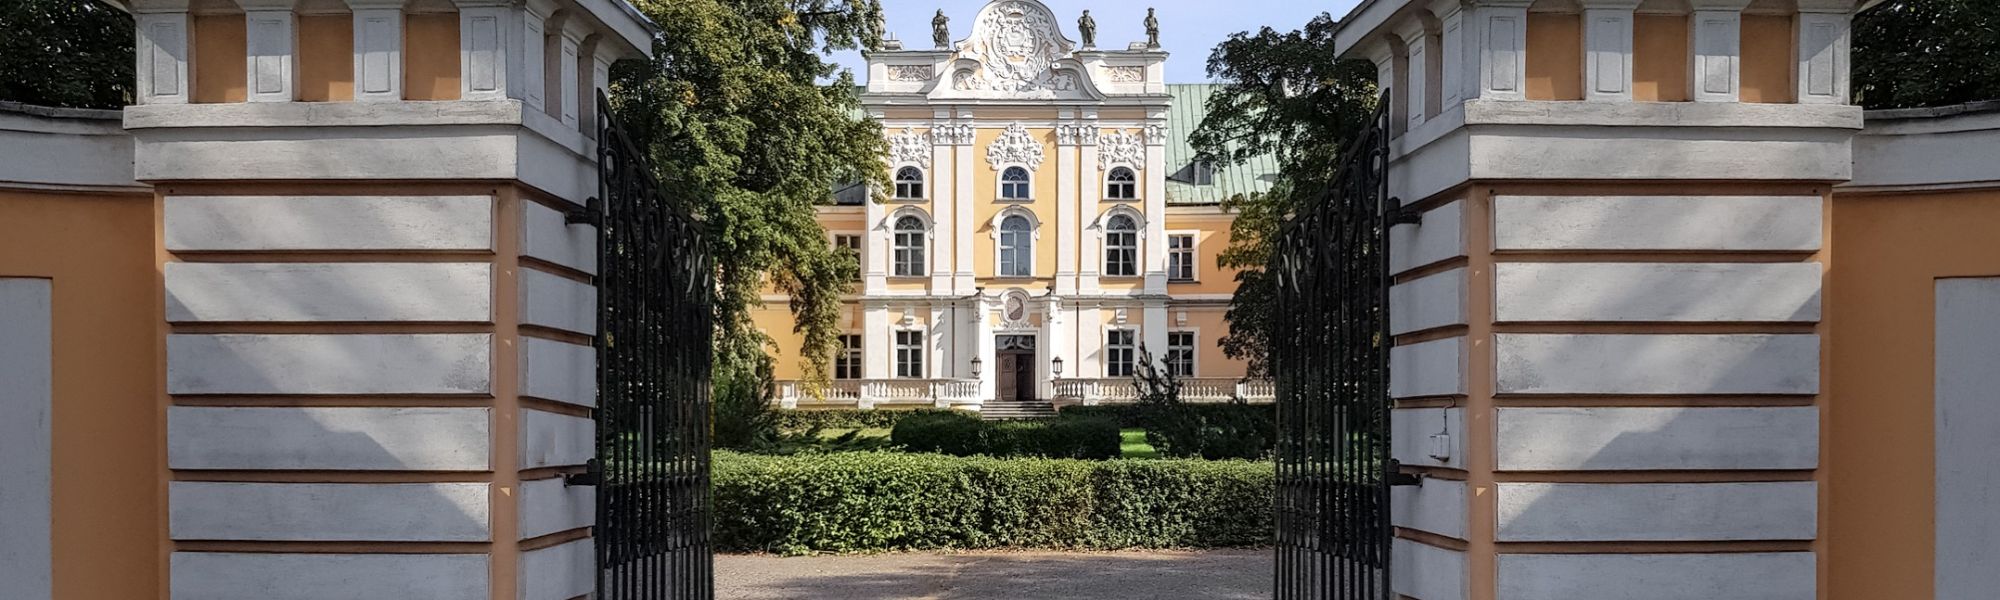 Photos Magnifique château baroque en Grande-Pologne